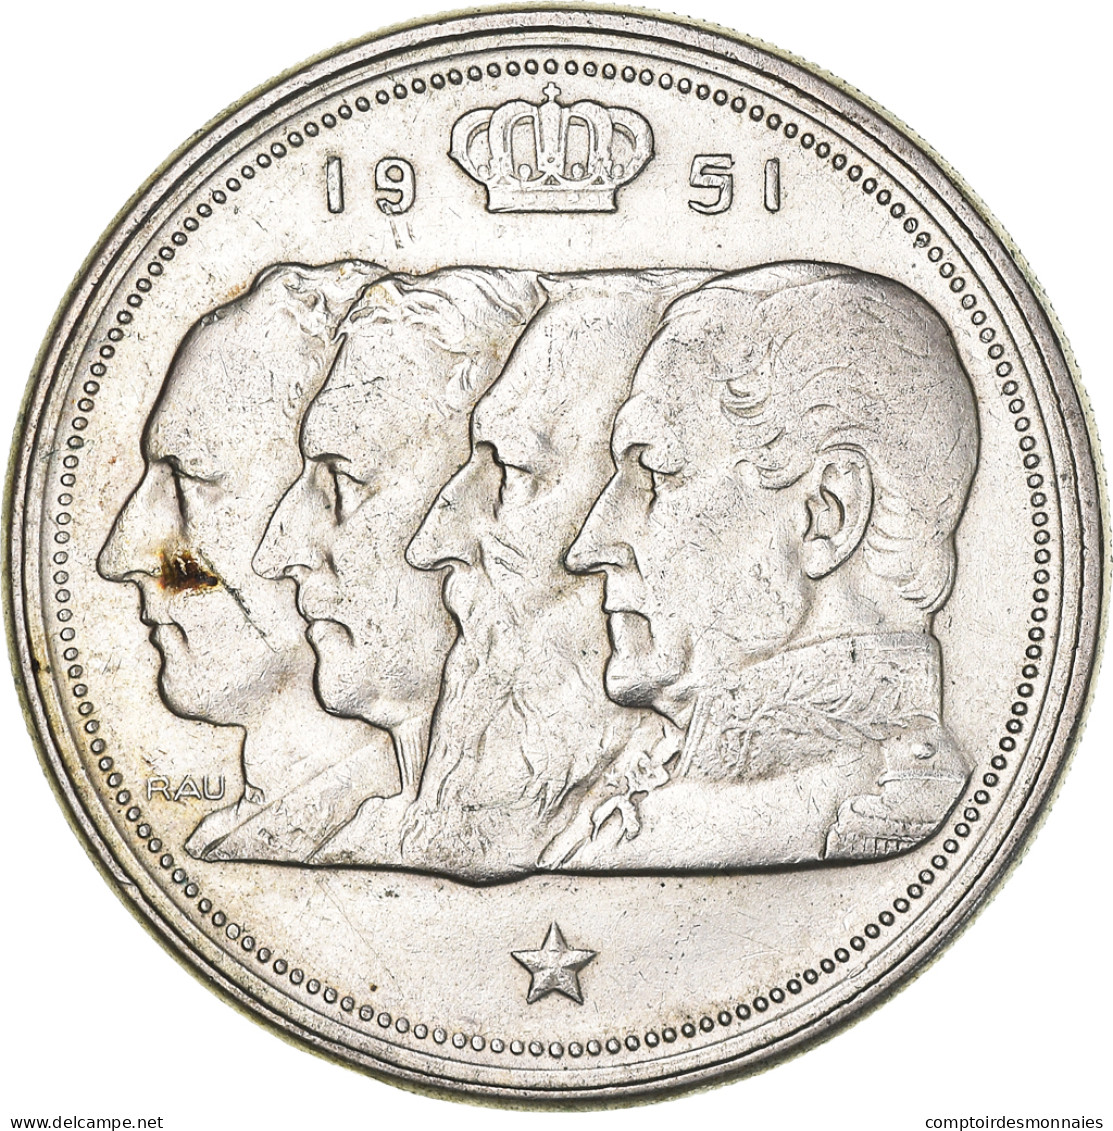 Monnaie, Belgique, 100 Francs, 100 Frank, 1951, TTB+, Argent, KM:139.1 - 100 Franc